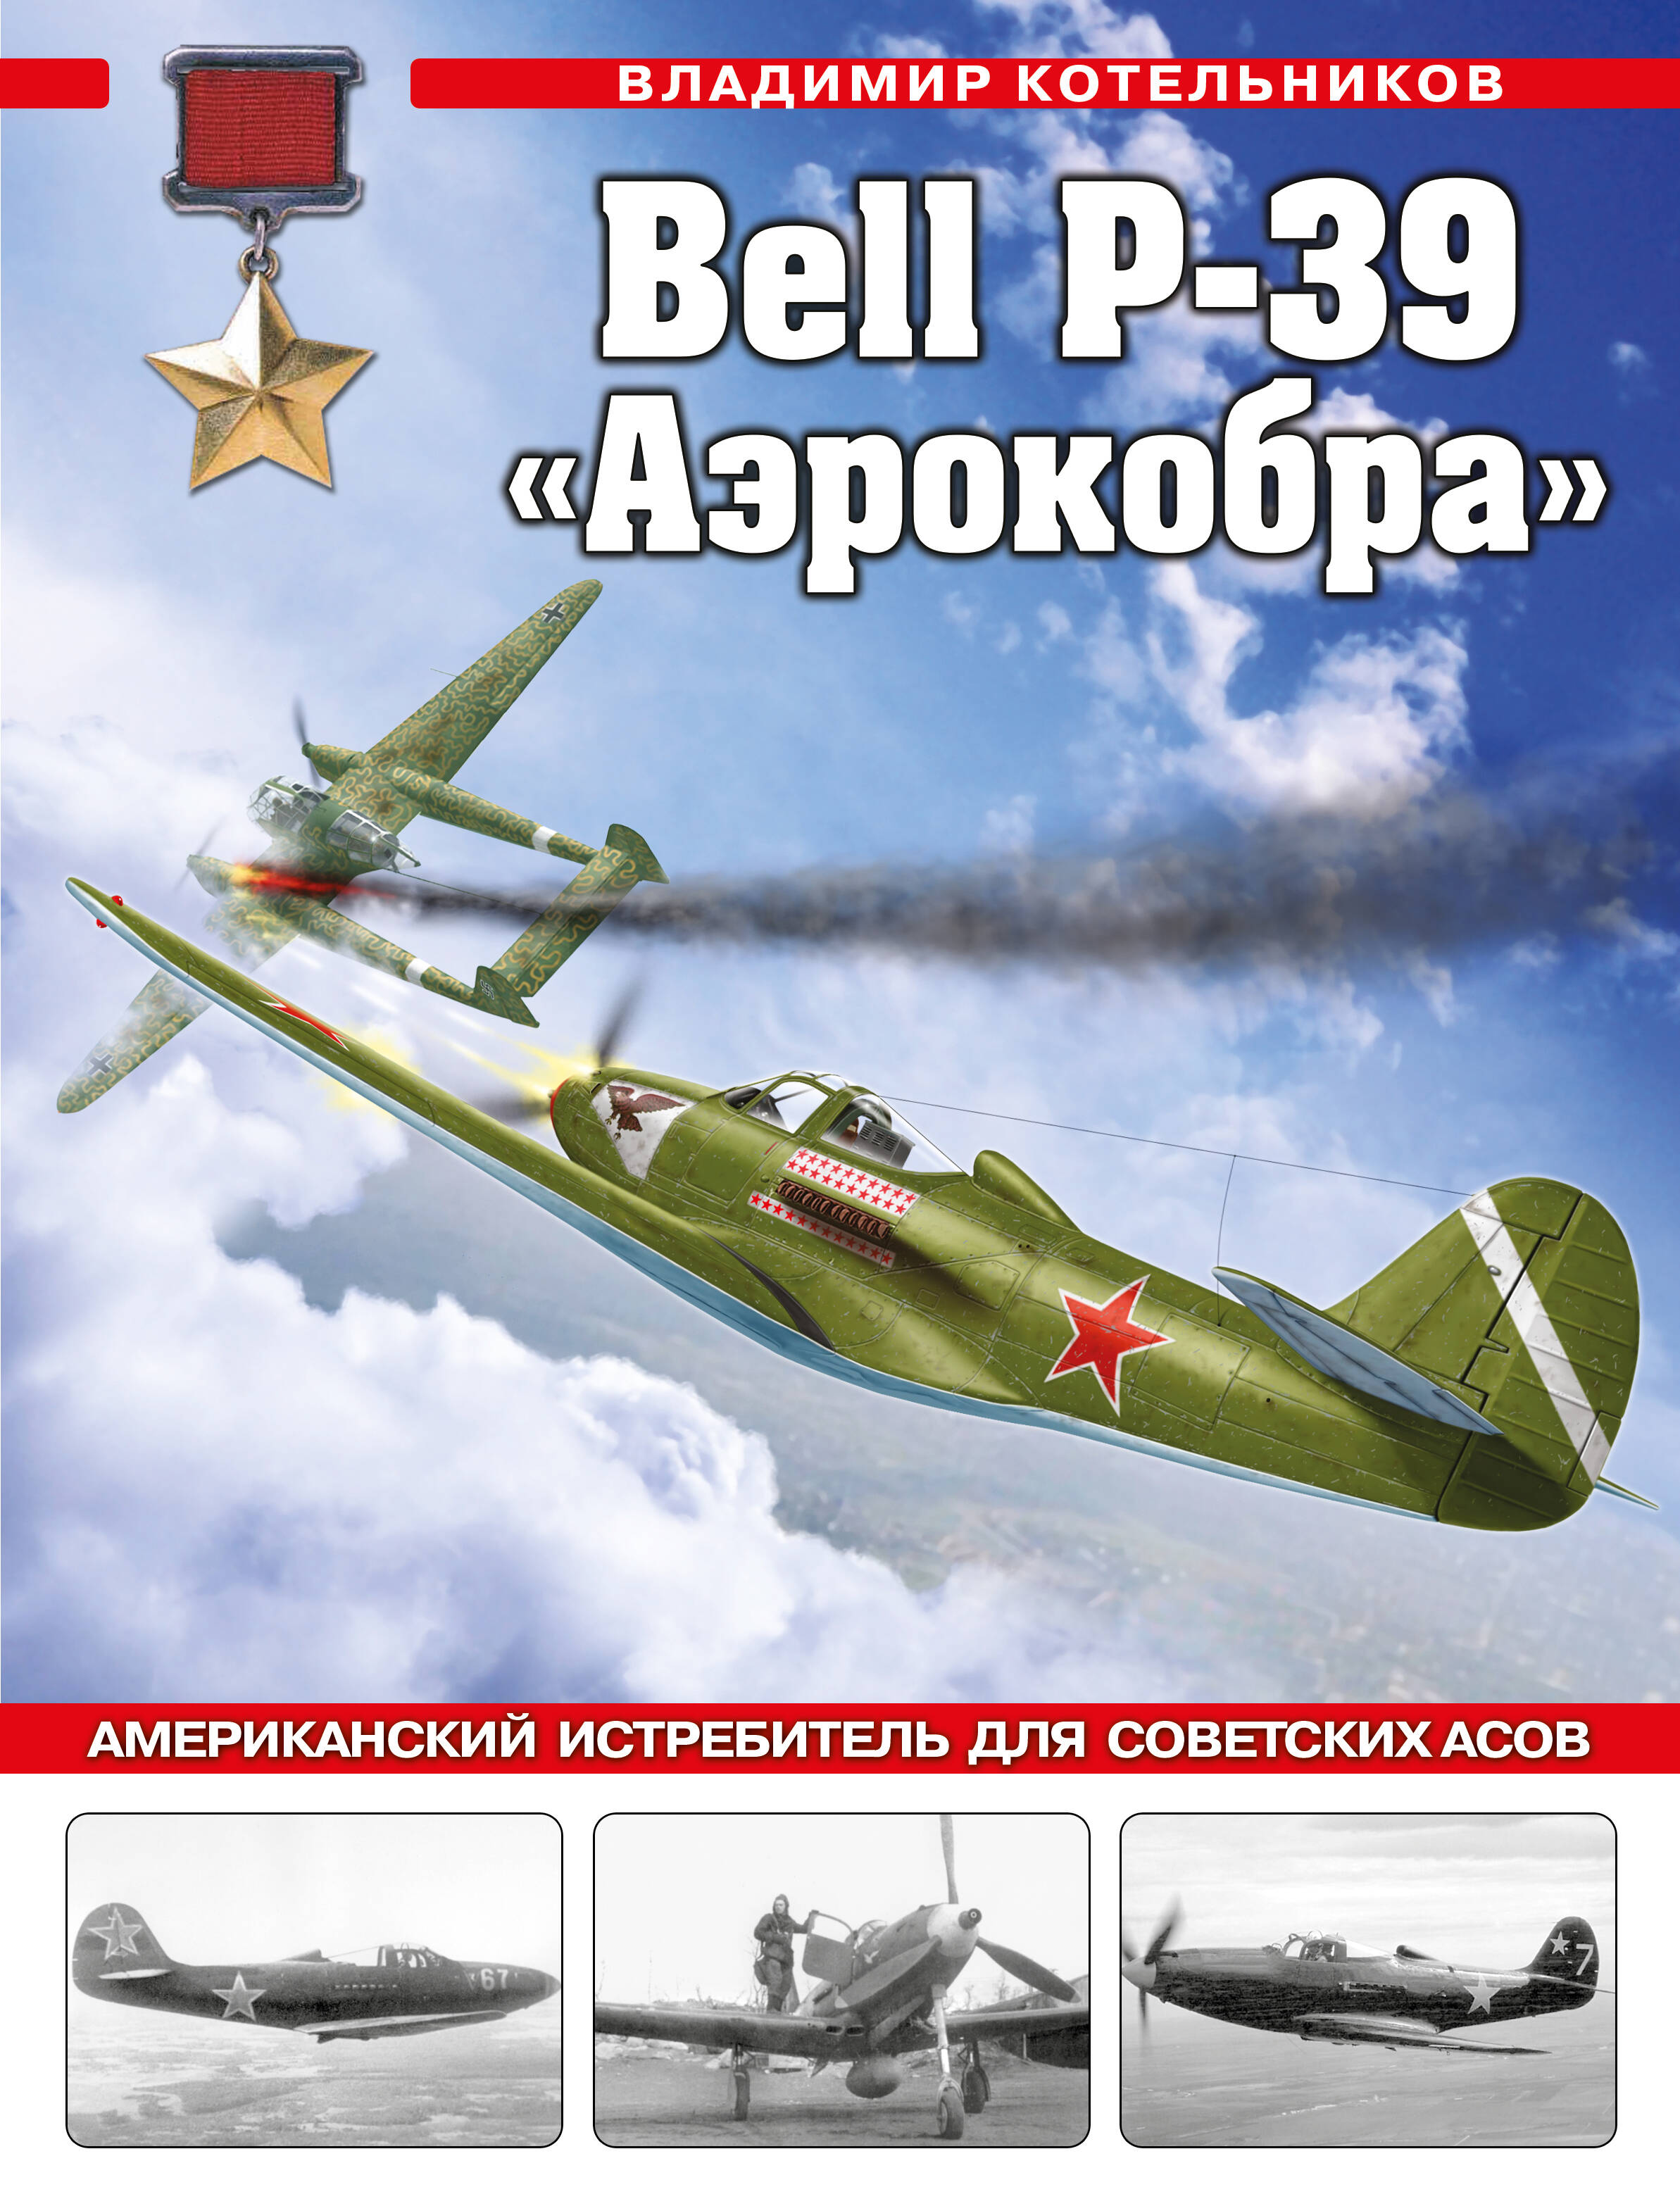 Котельников Владимир Ростиславович - Bell P-39 «Аэрокобра». Американский истребитель для советских асов